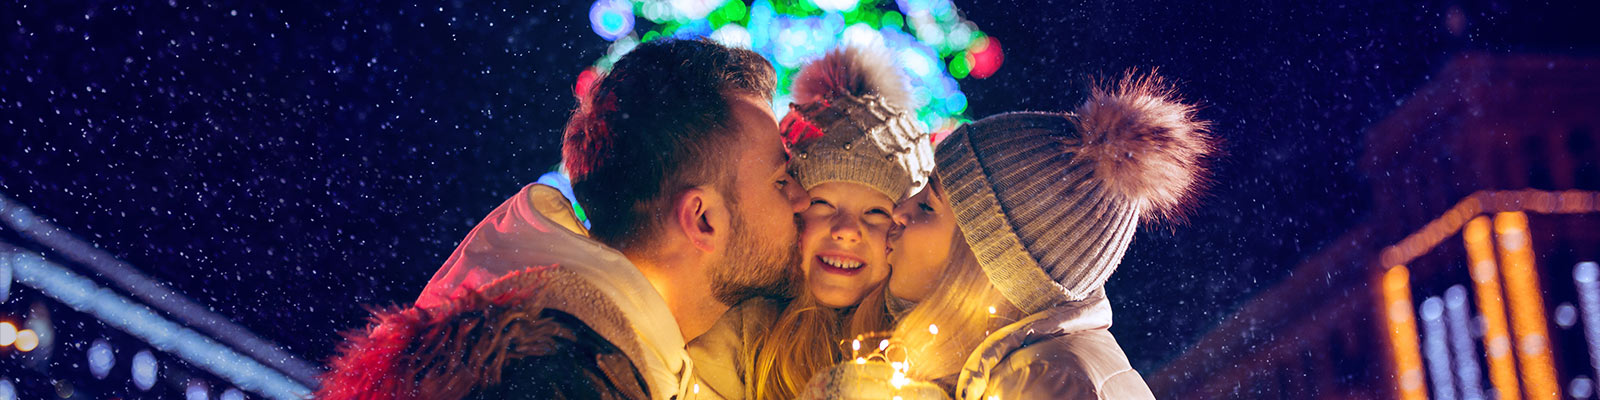 Un padre y una madre dan un beso a su hija. De fondo un arbol de navidad iluminado.